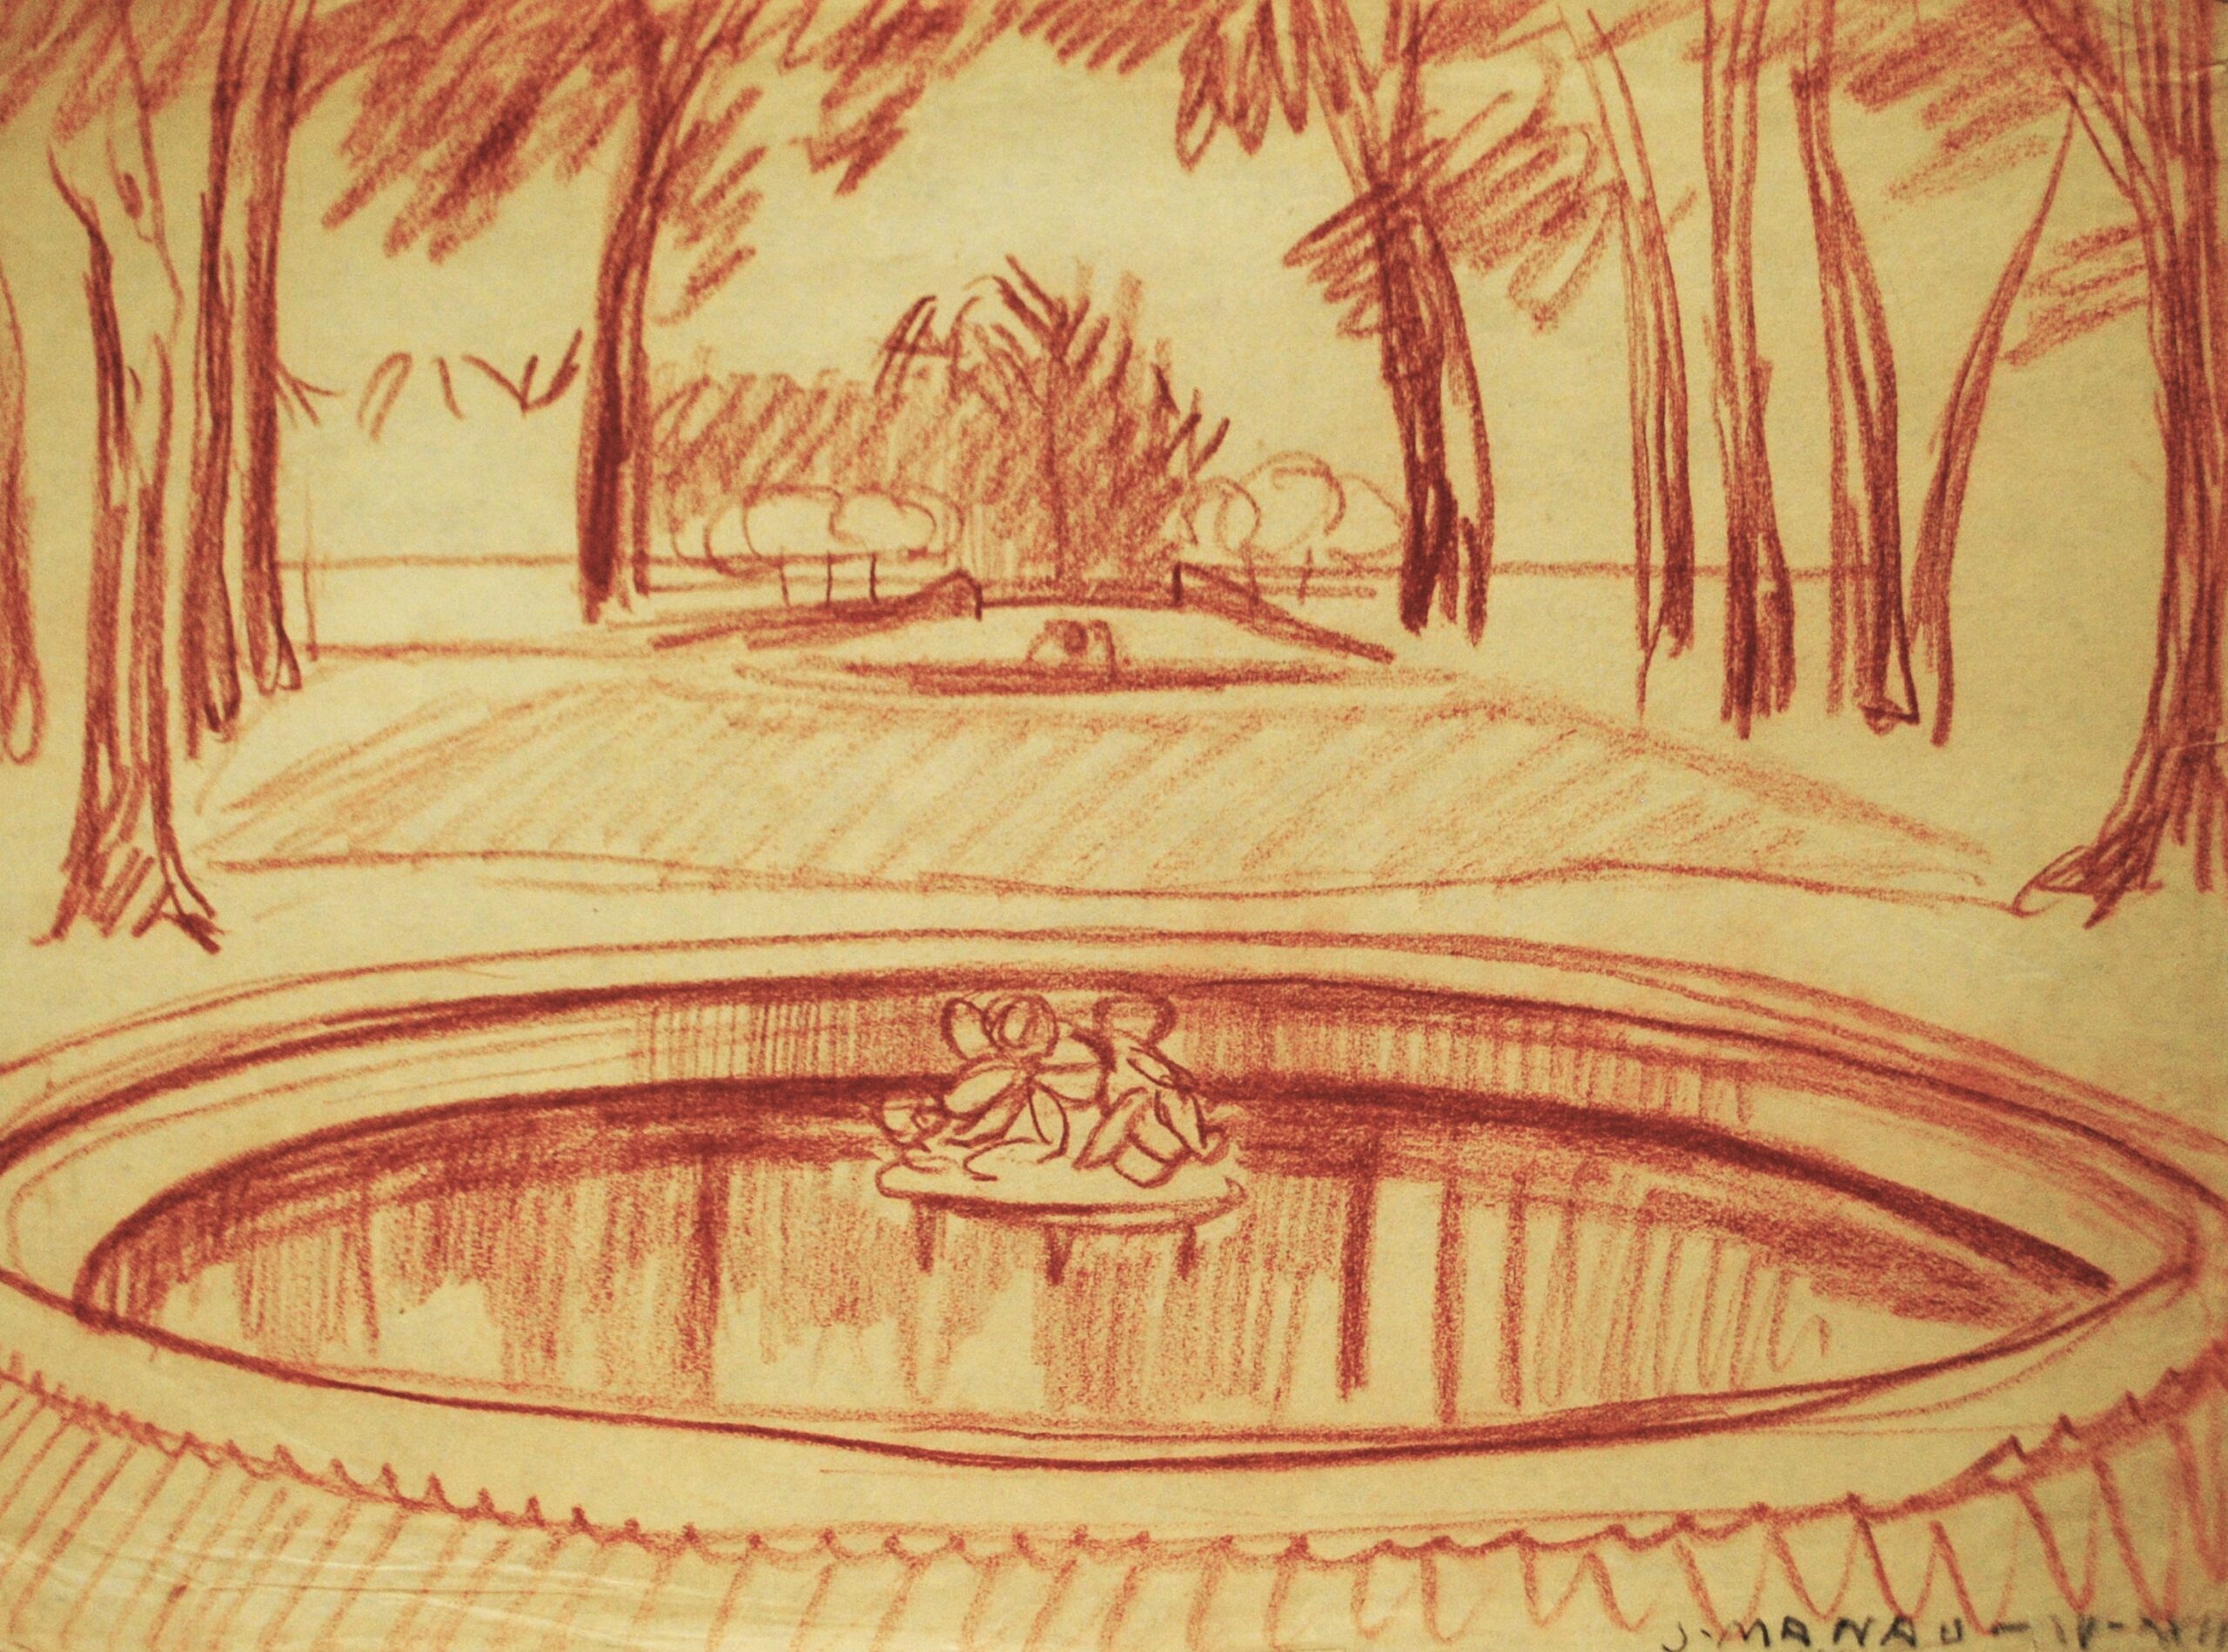 Dibujo de José Manaut titulado Fuente, Versalles, 1923. Lápiz color sobre papel.